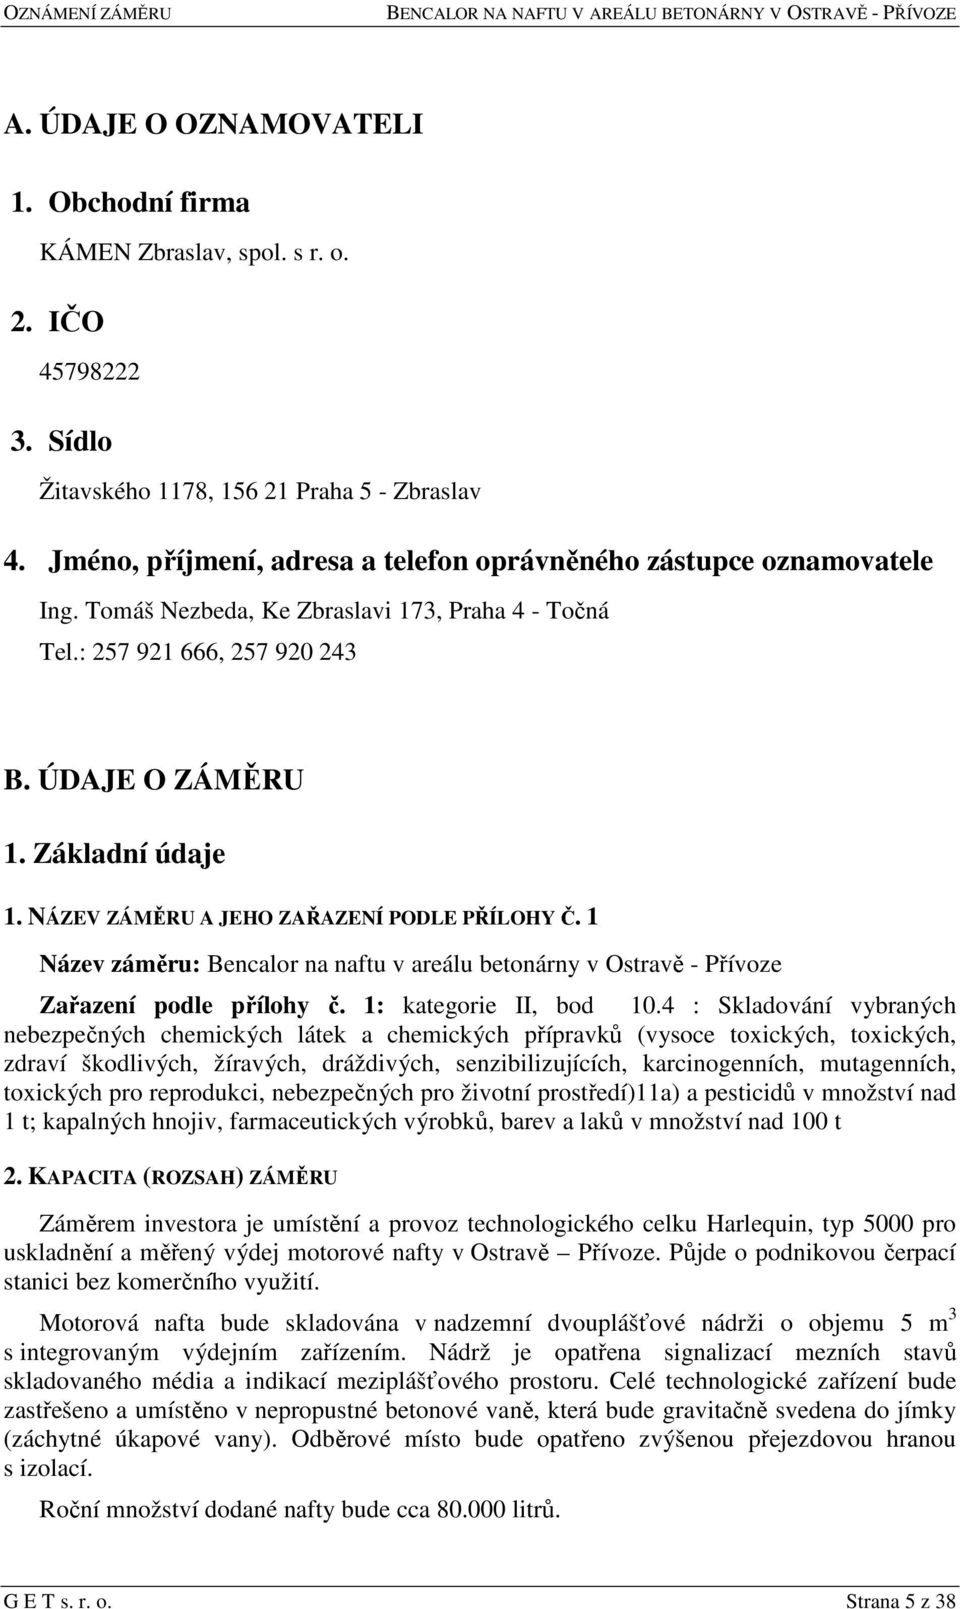 NÁZEV ZÁMĚRU A JEHO ZAŘAZENÍ PODLE PŘÍLOHY Č. 1 Název záměru: Bencalor na naftu v areálu betonárny v Ostravě - Přívoze Zařazení podle přílohy č. 1: kategorie II, bod 10.